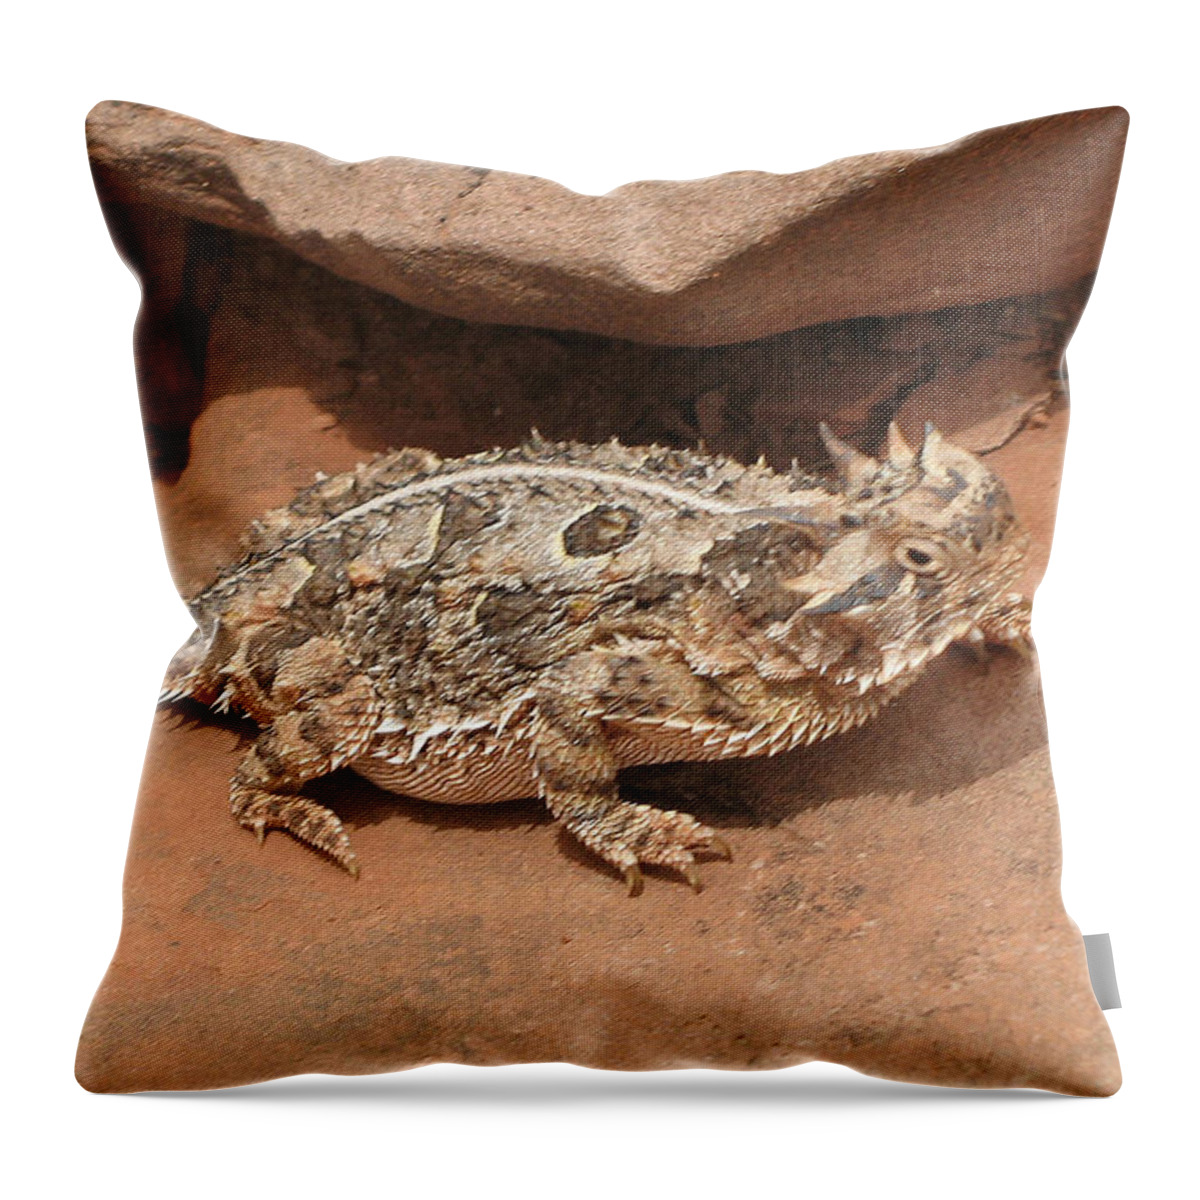 Lizard Throw Pillow featuring the digital art Lizard #7 by Super Lovely